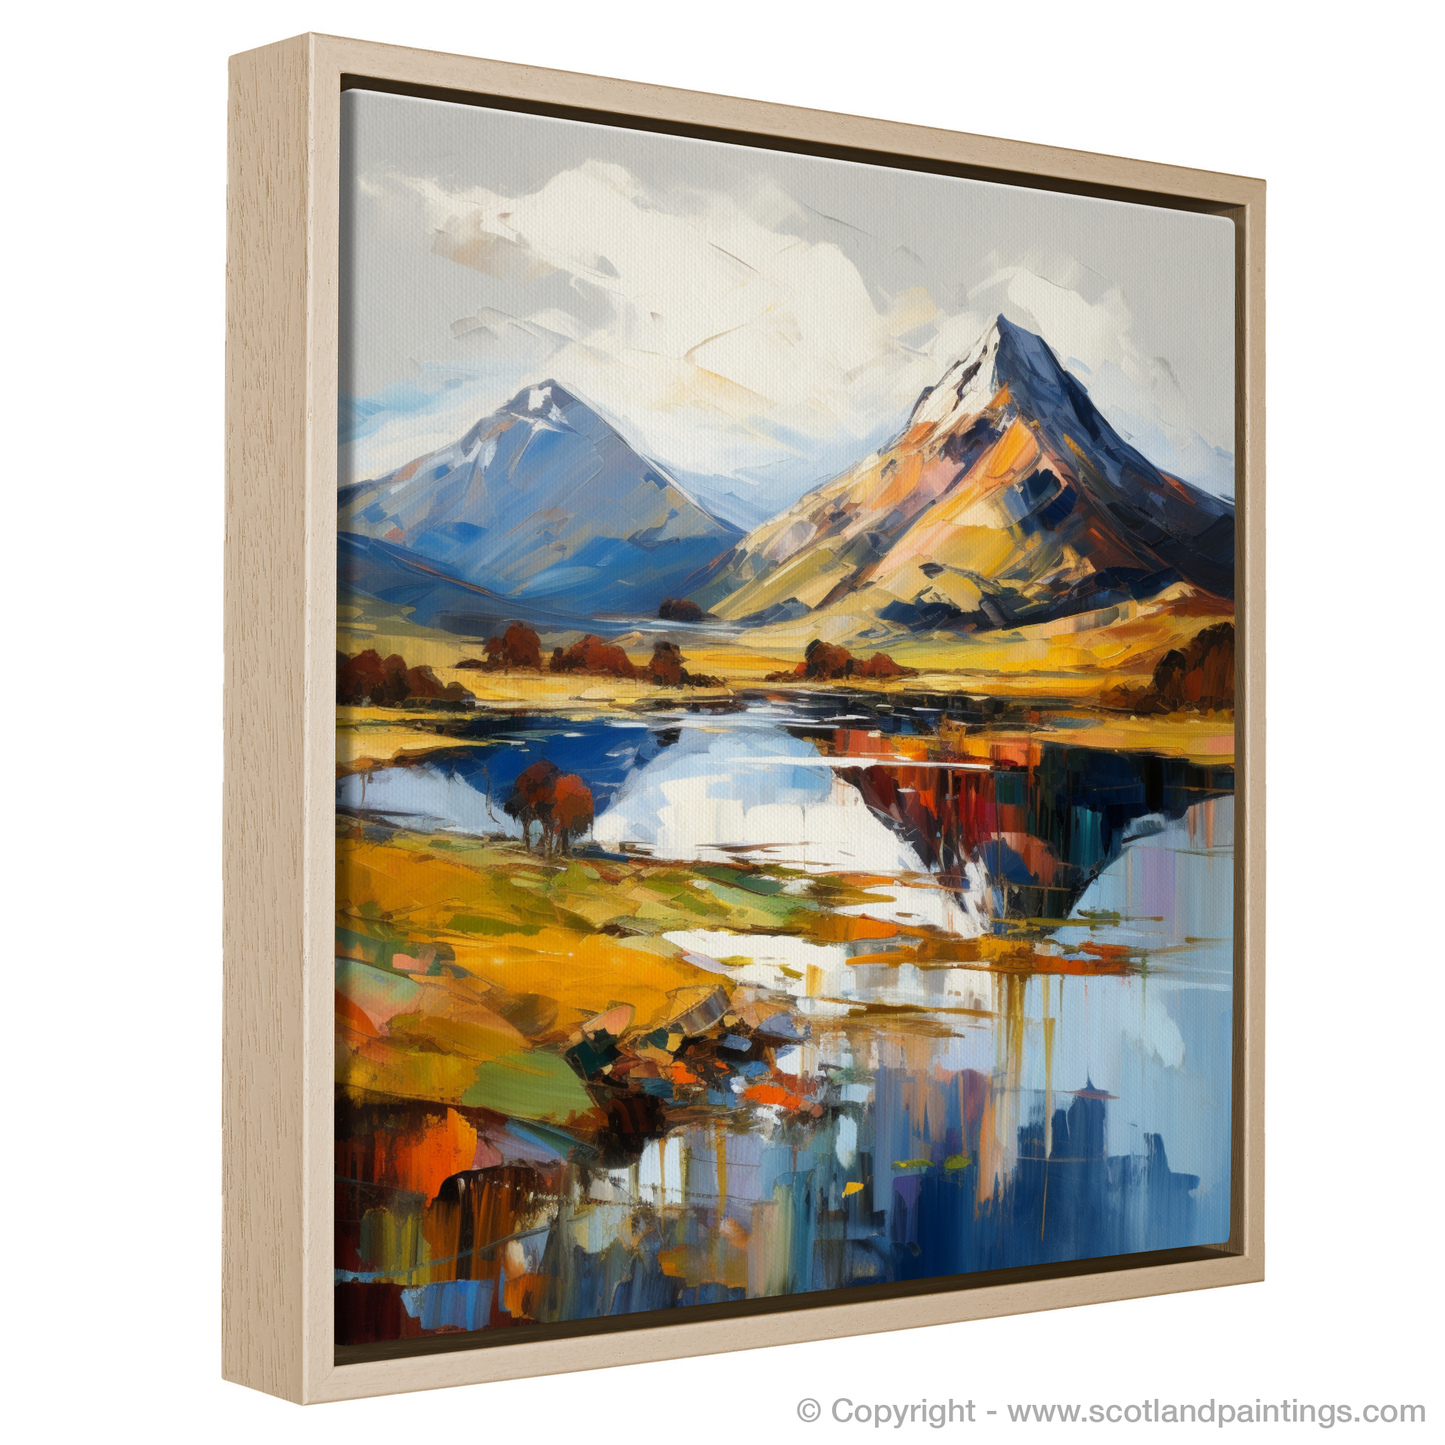 Painting and Art Print of Ben Vorlich (Loch Lomond) entitled "Majestic Ben Vorlich: An Expressionist Journey Through the Scottish Highlands".